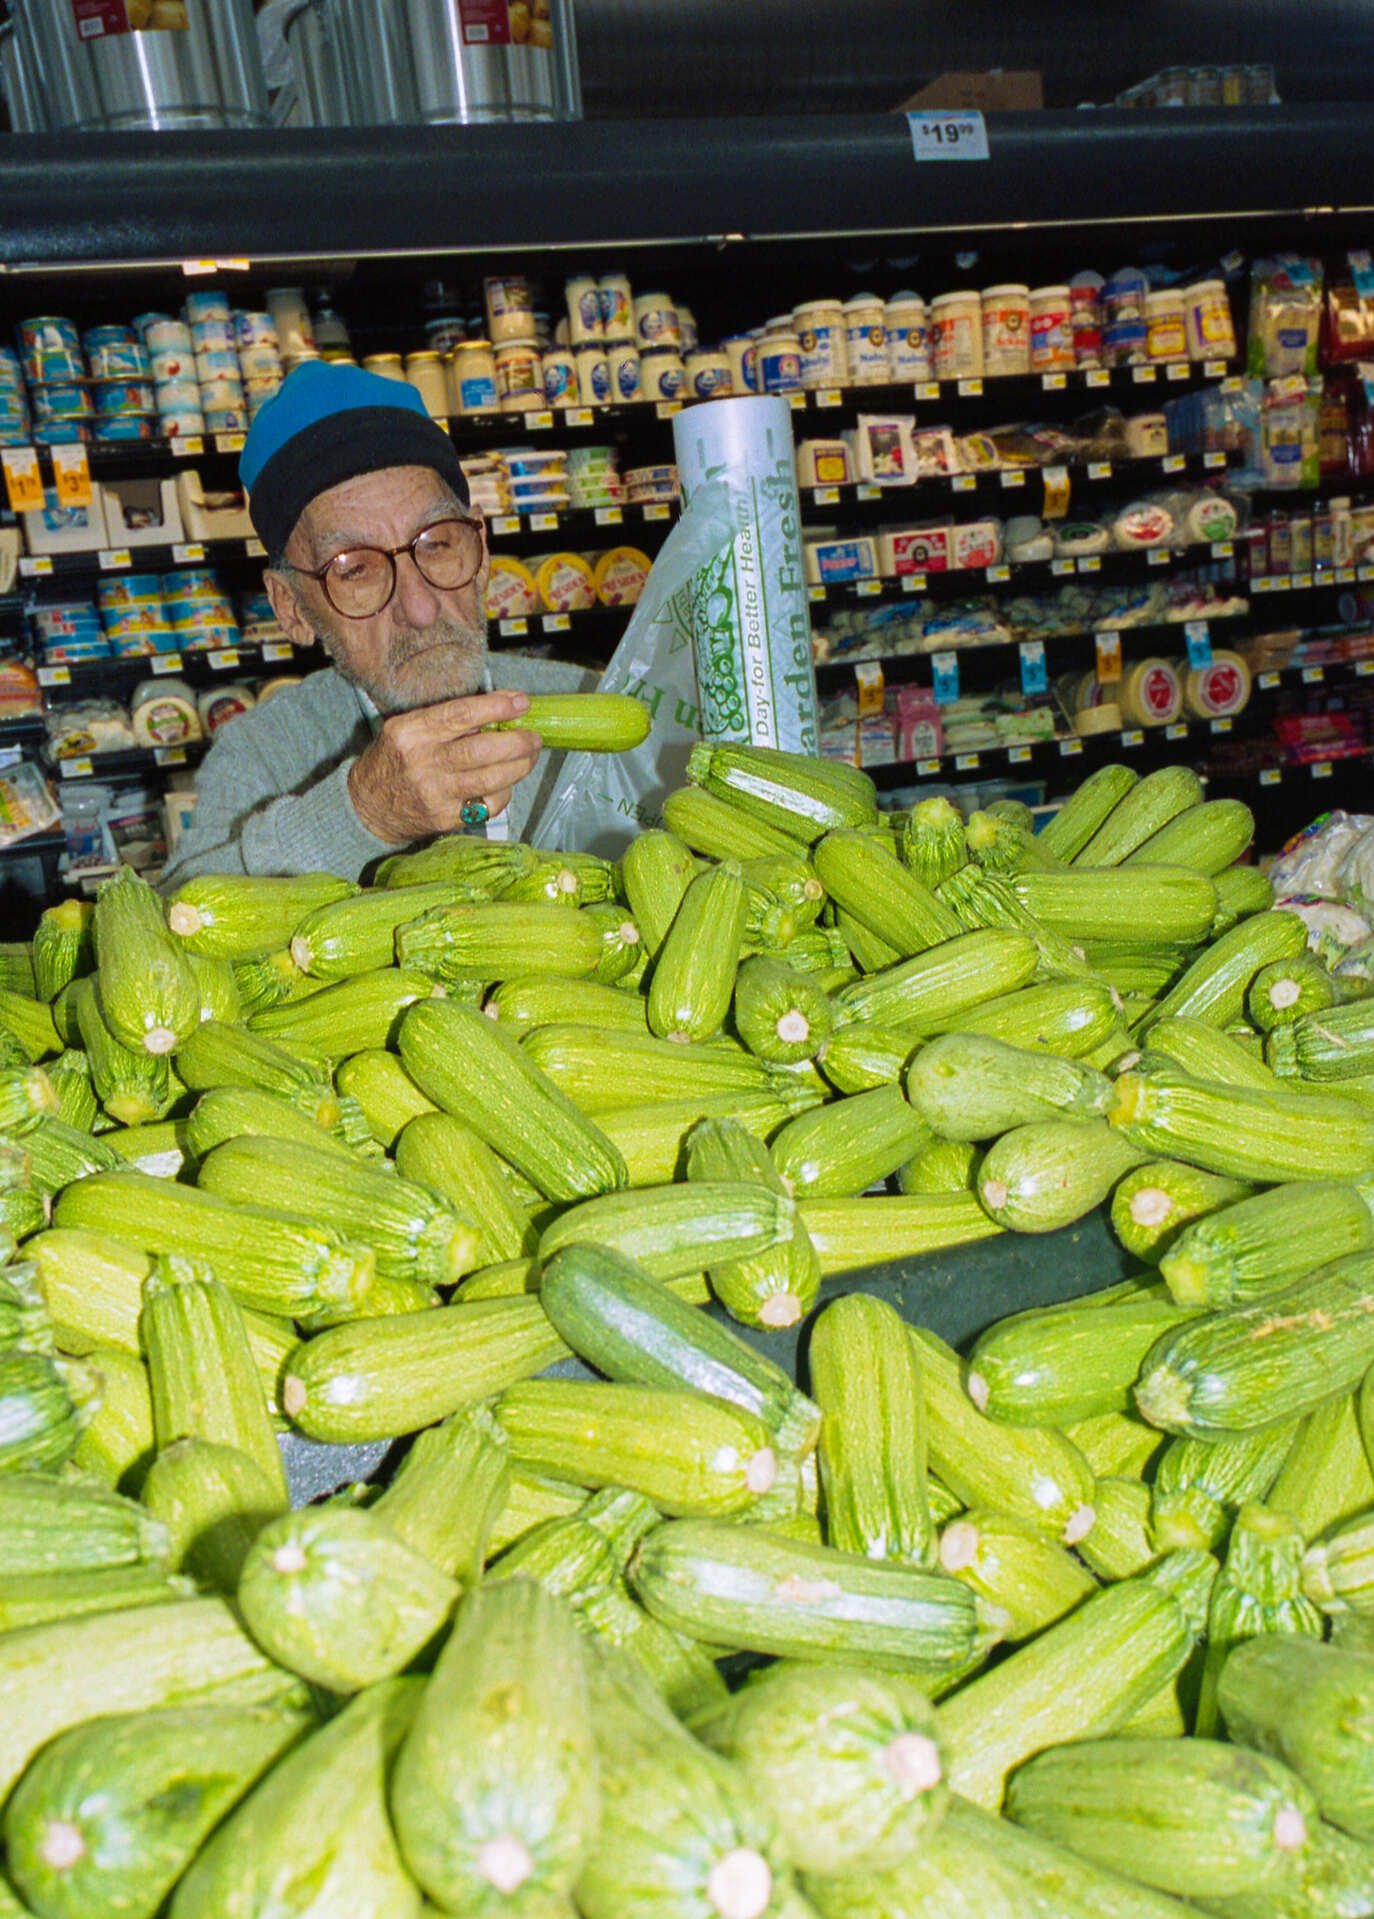 Cucumber or Zucchini?